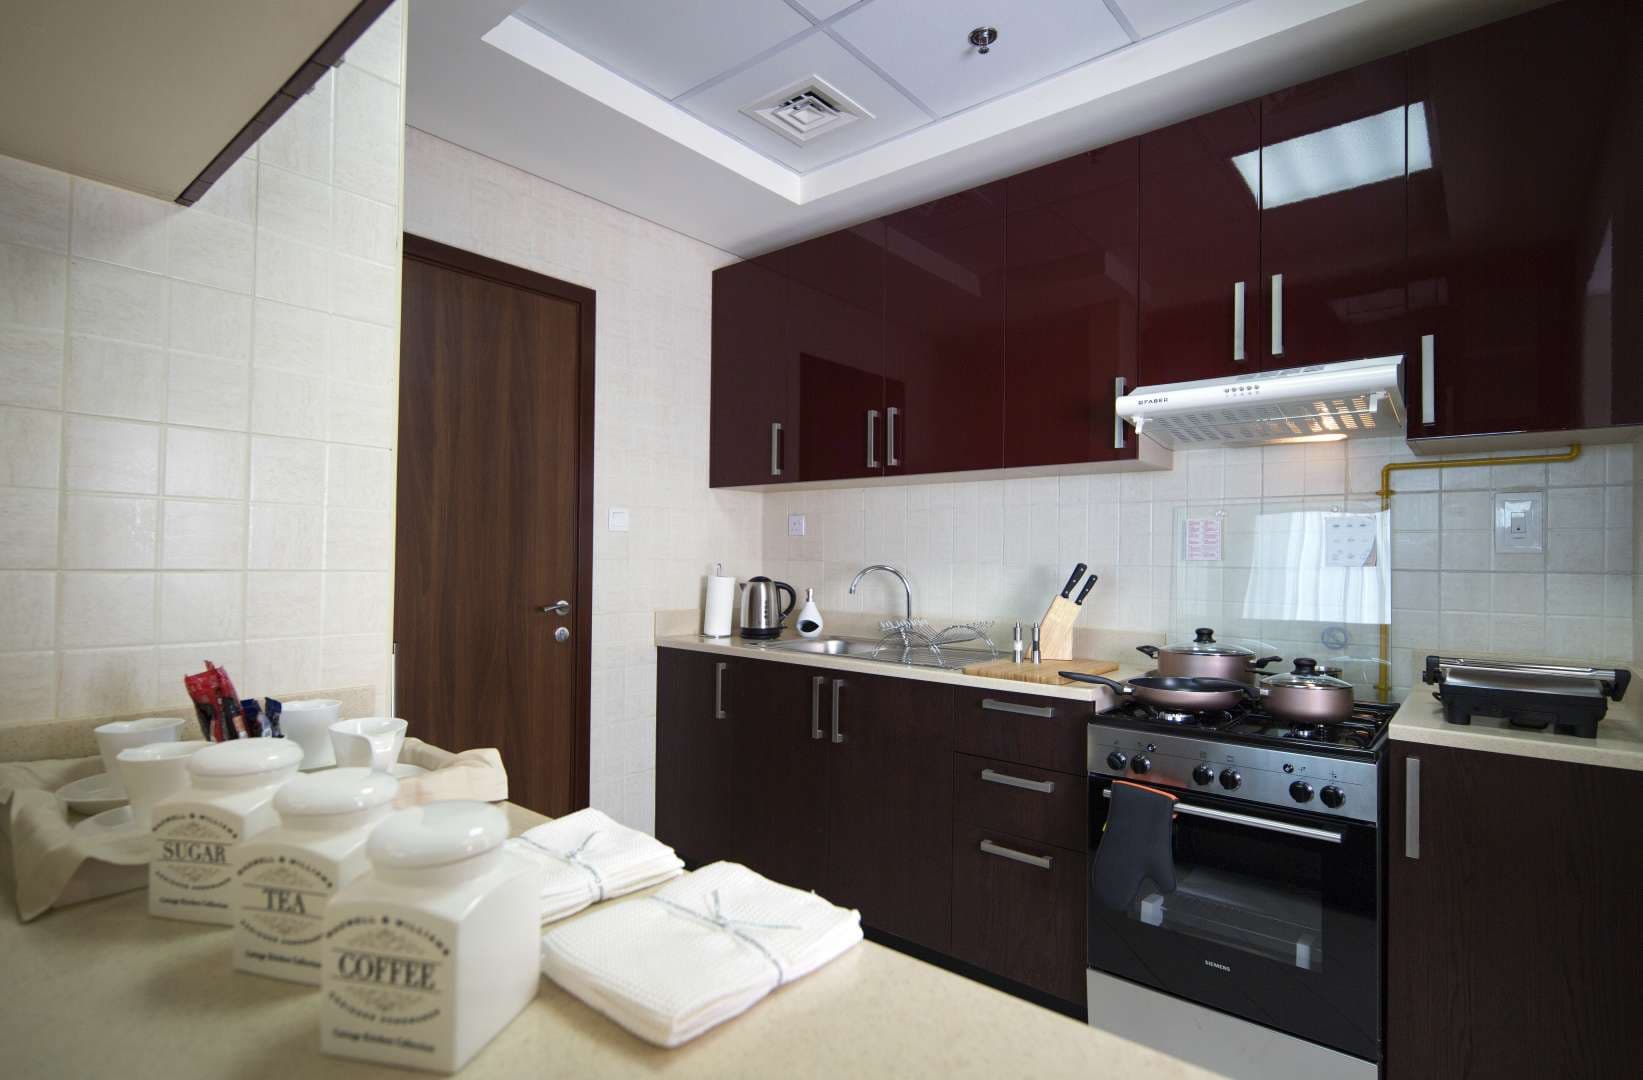 1 Bedroom Apartment For Rent Barcelo Residences Lp10858 26dbaf653dc66200.jpg